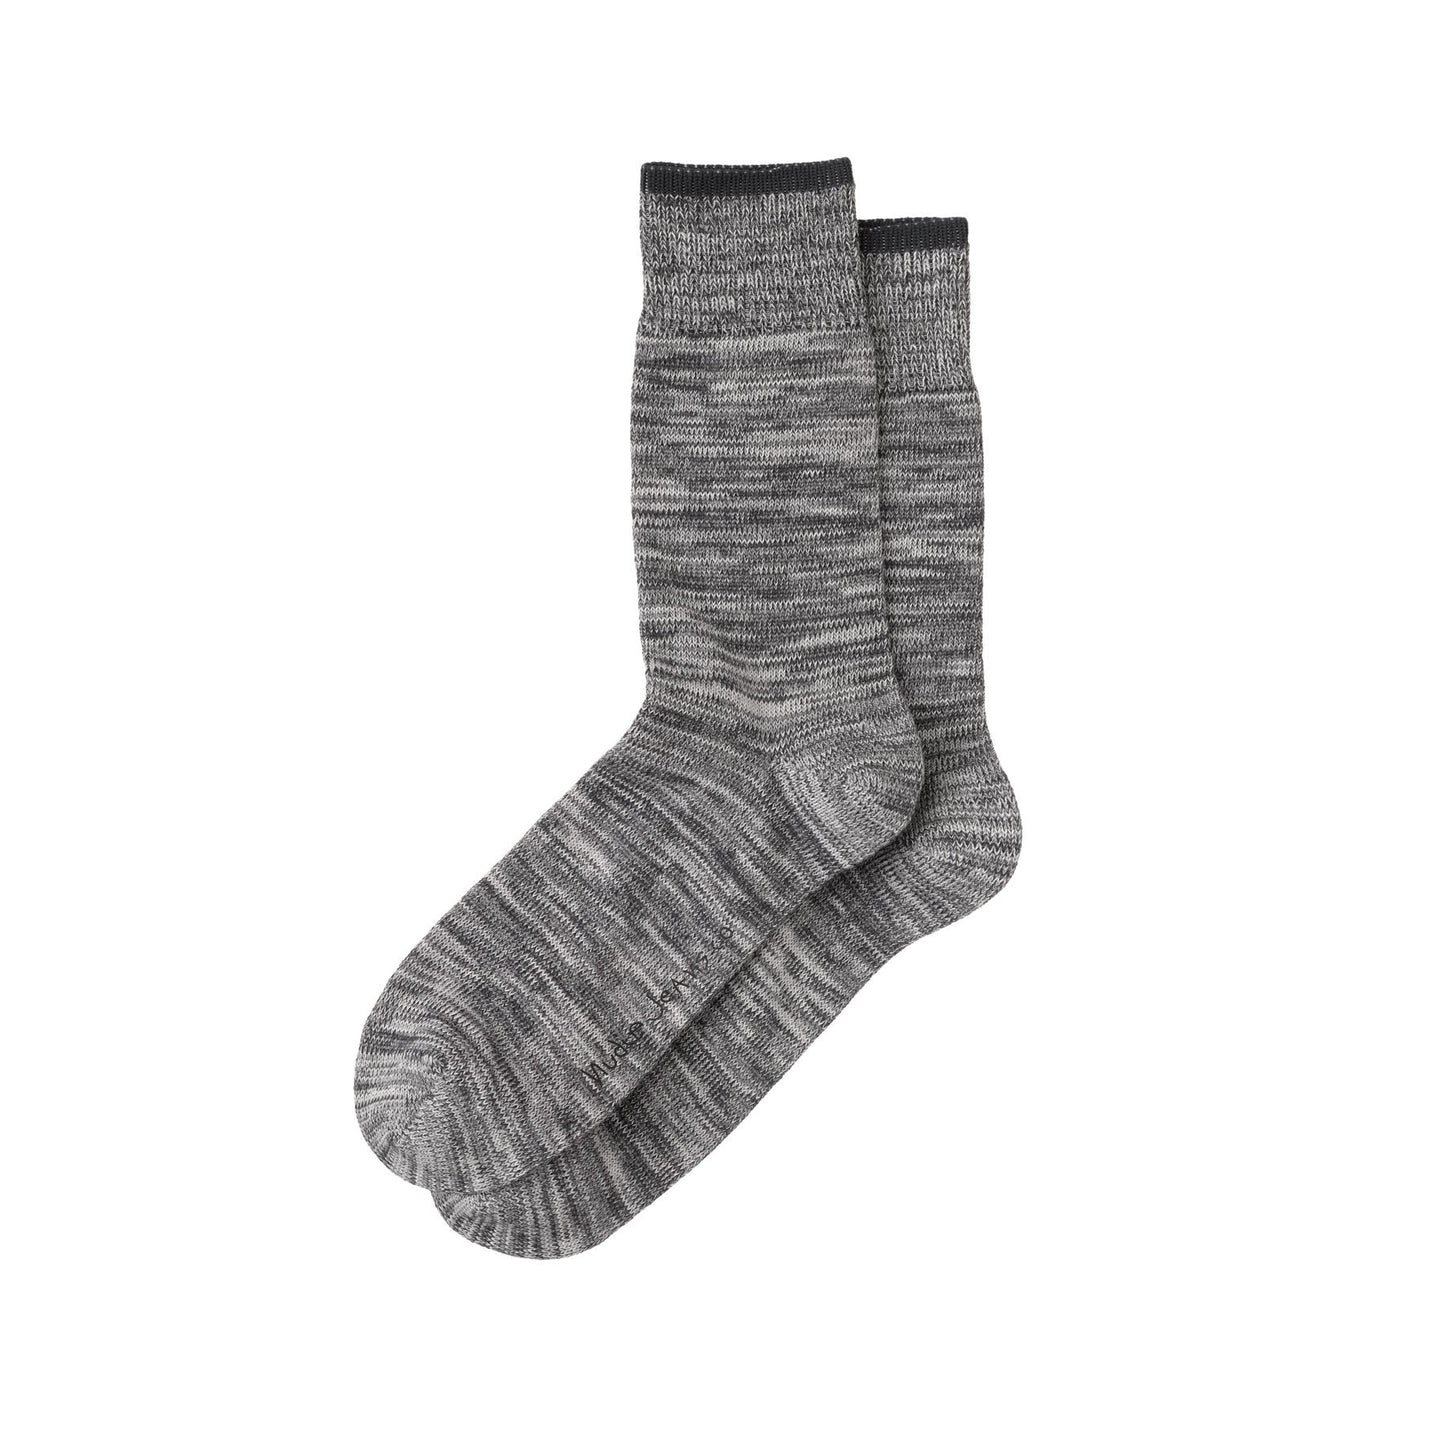 Nudie Jeans Co. Rasmusson Multi Yarn Socks